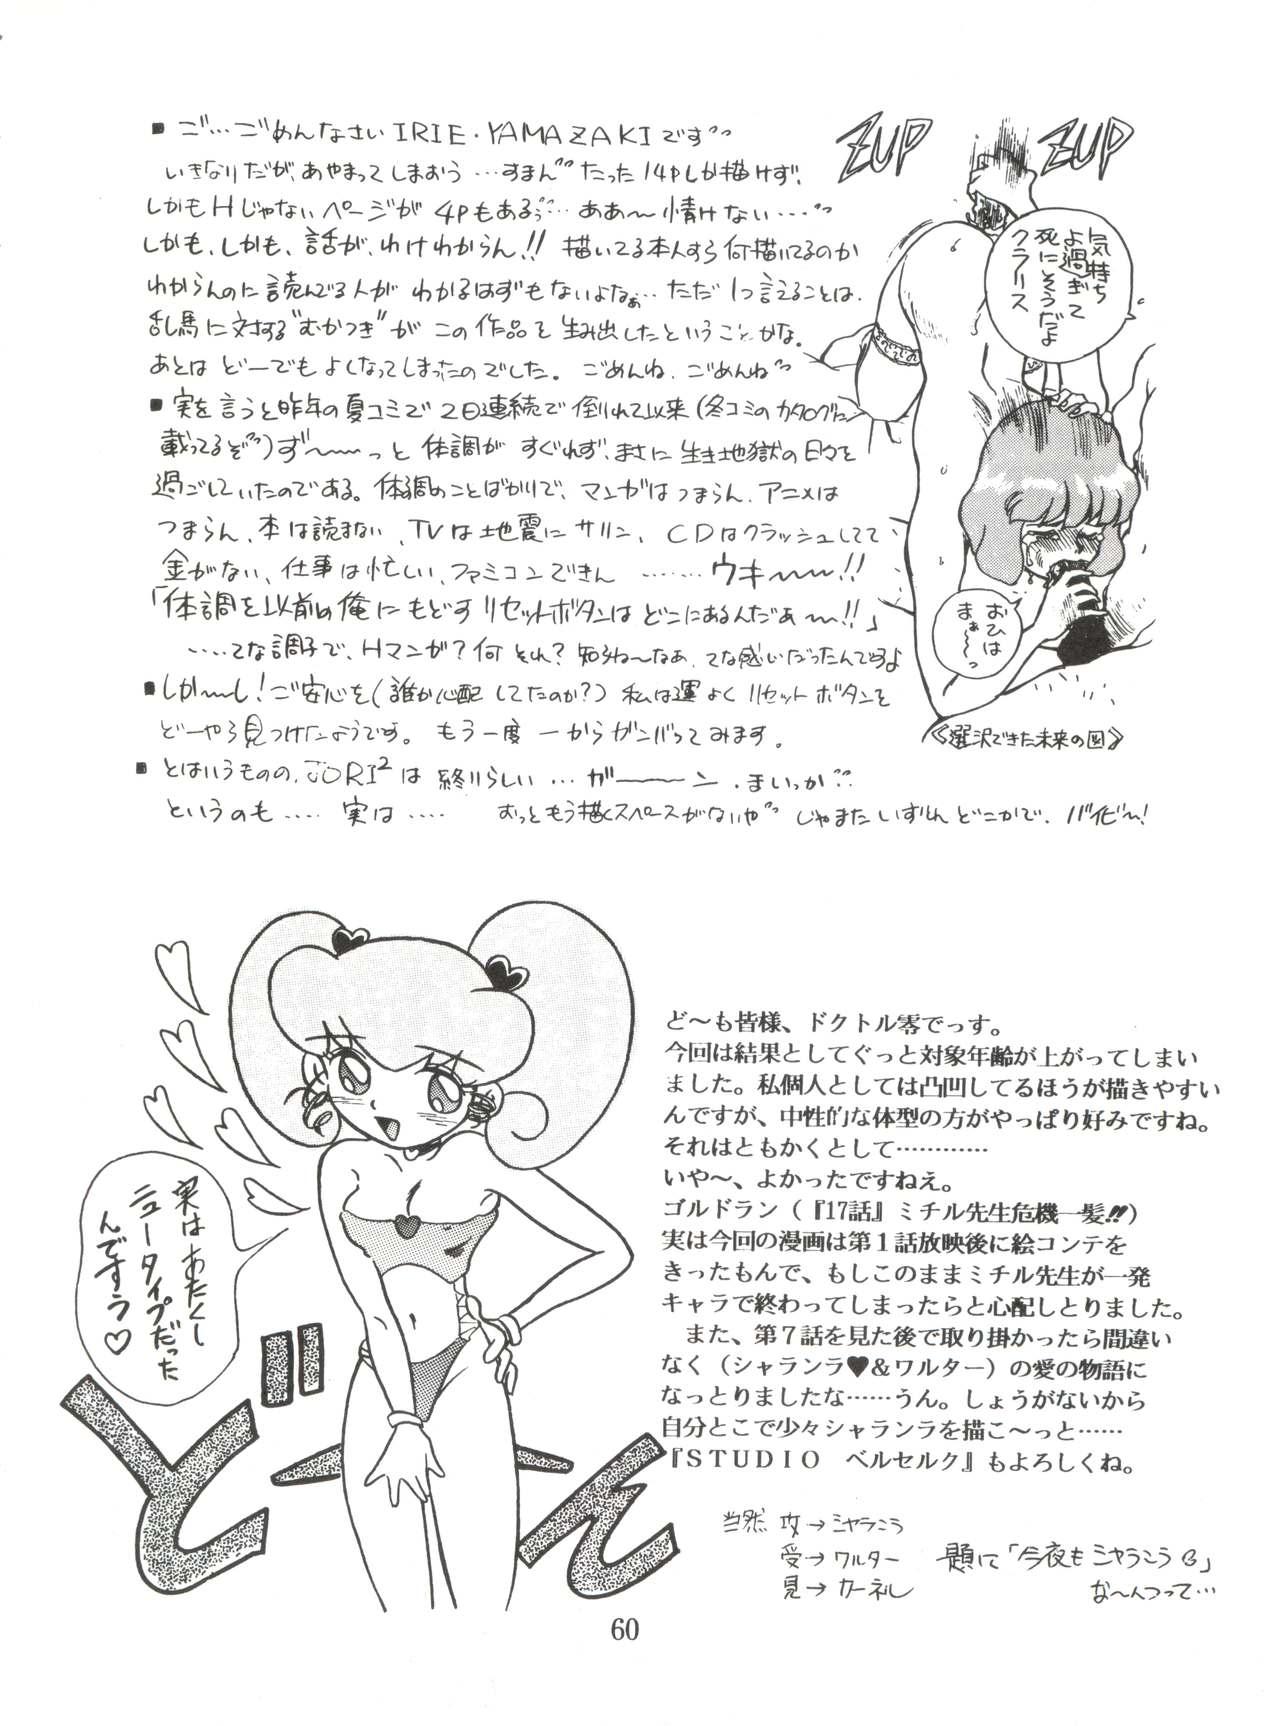 Fetish JoRiJoRi No. 6 - Ranma 12 Princess knight Movies - Page 59